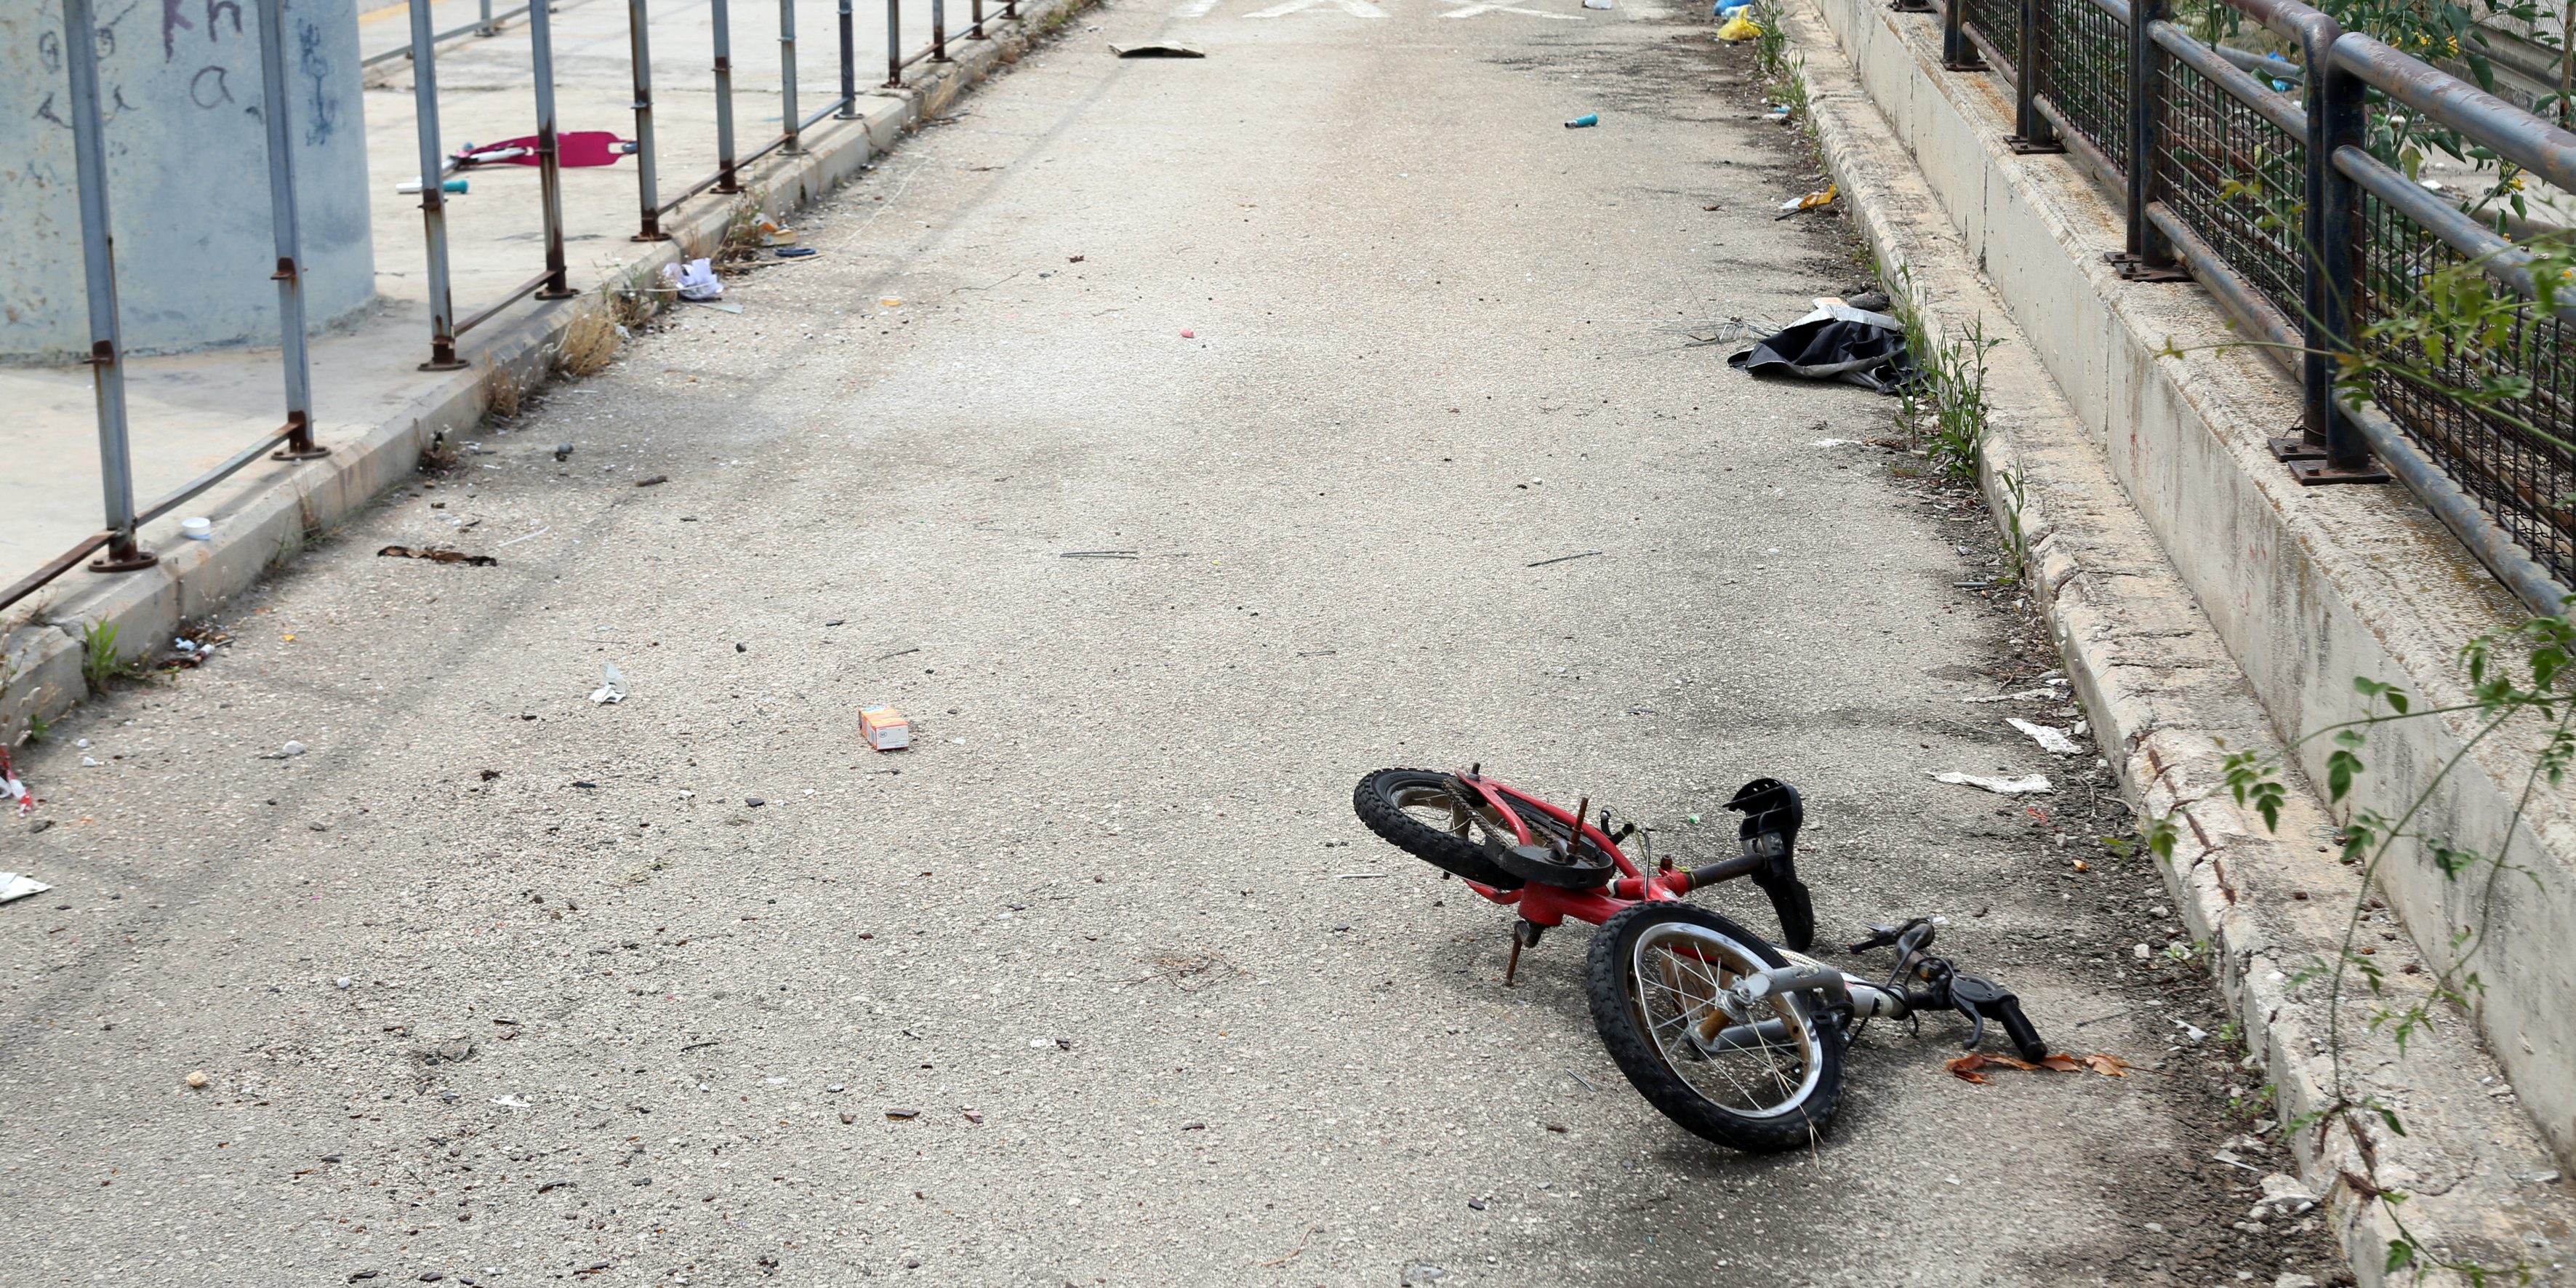 «Έγινε θαύμα μέσα στο Πάσχα» - Συγκίνηση για τον 11χρονο που τραυματίστηκε σοβαρά με το ποδήλατο